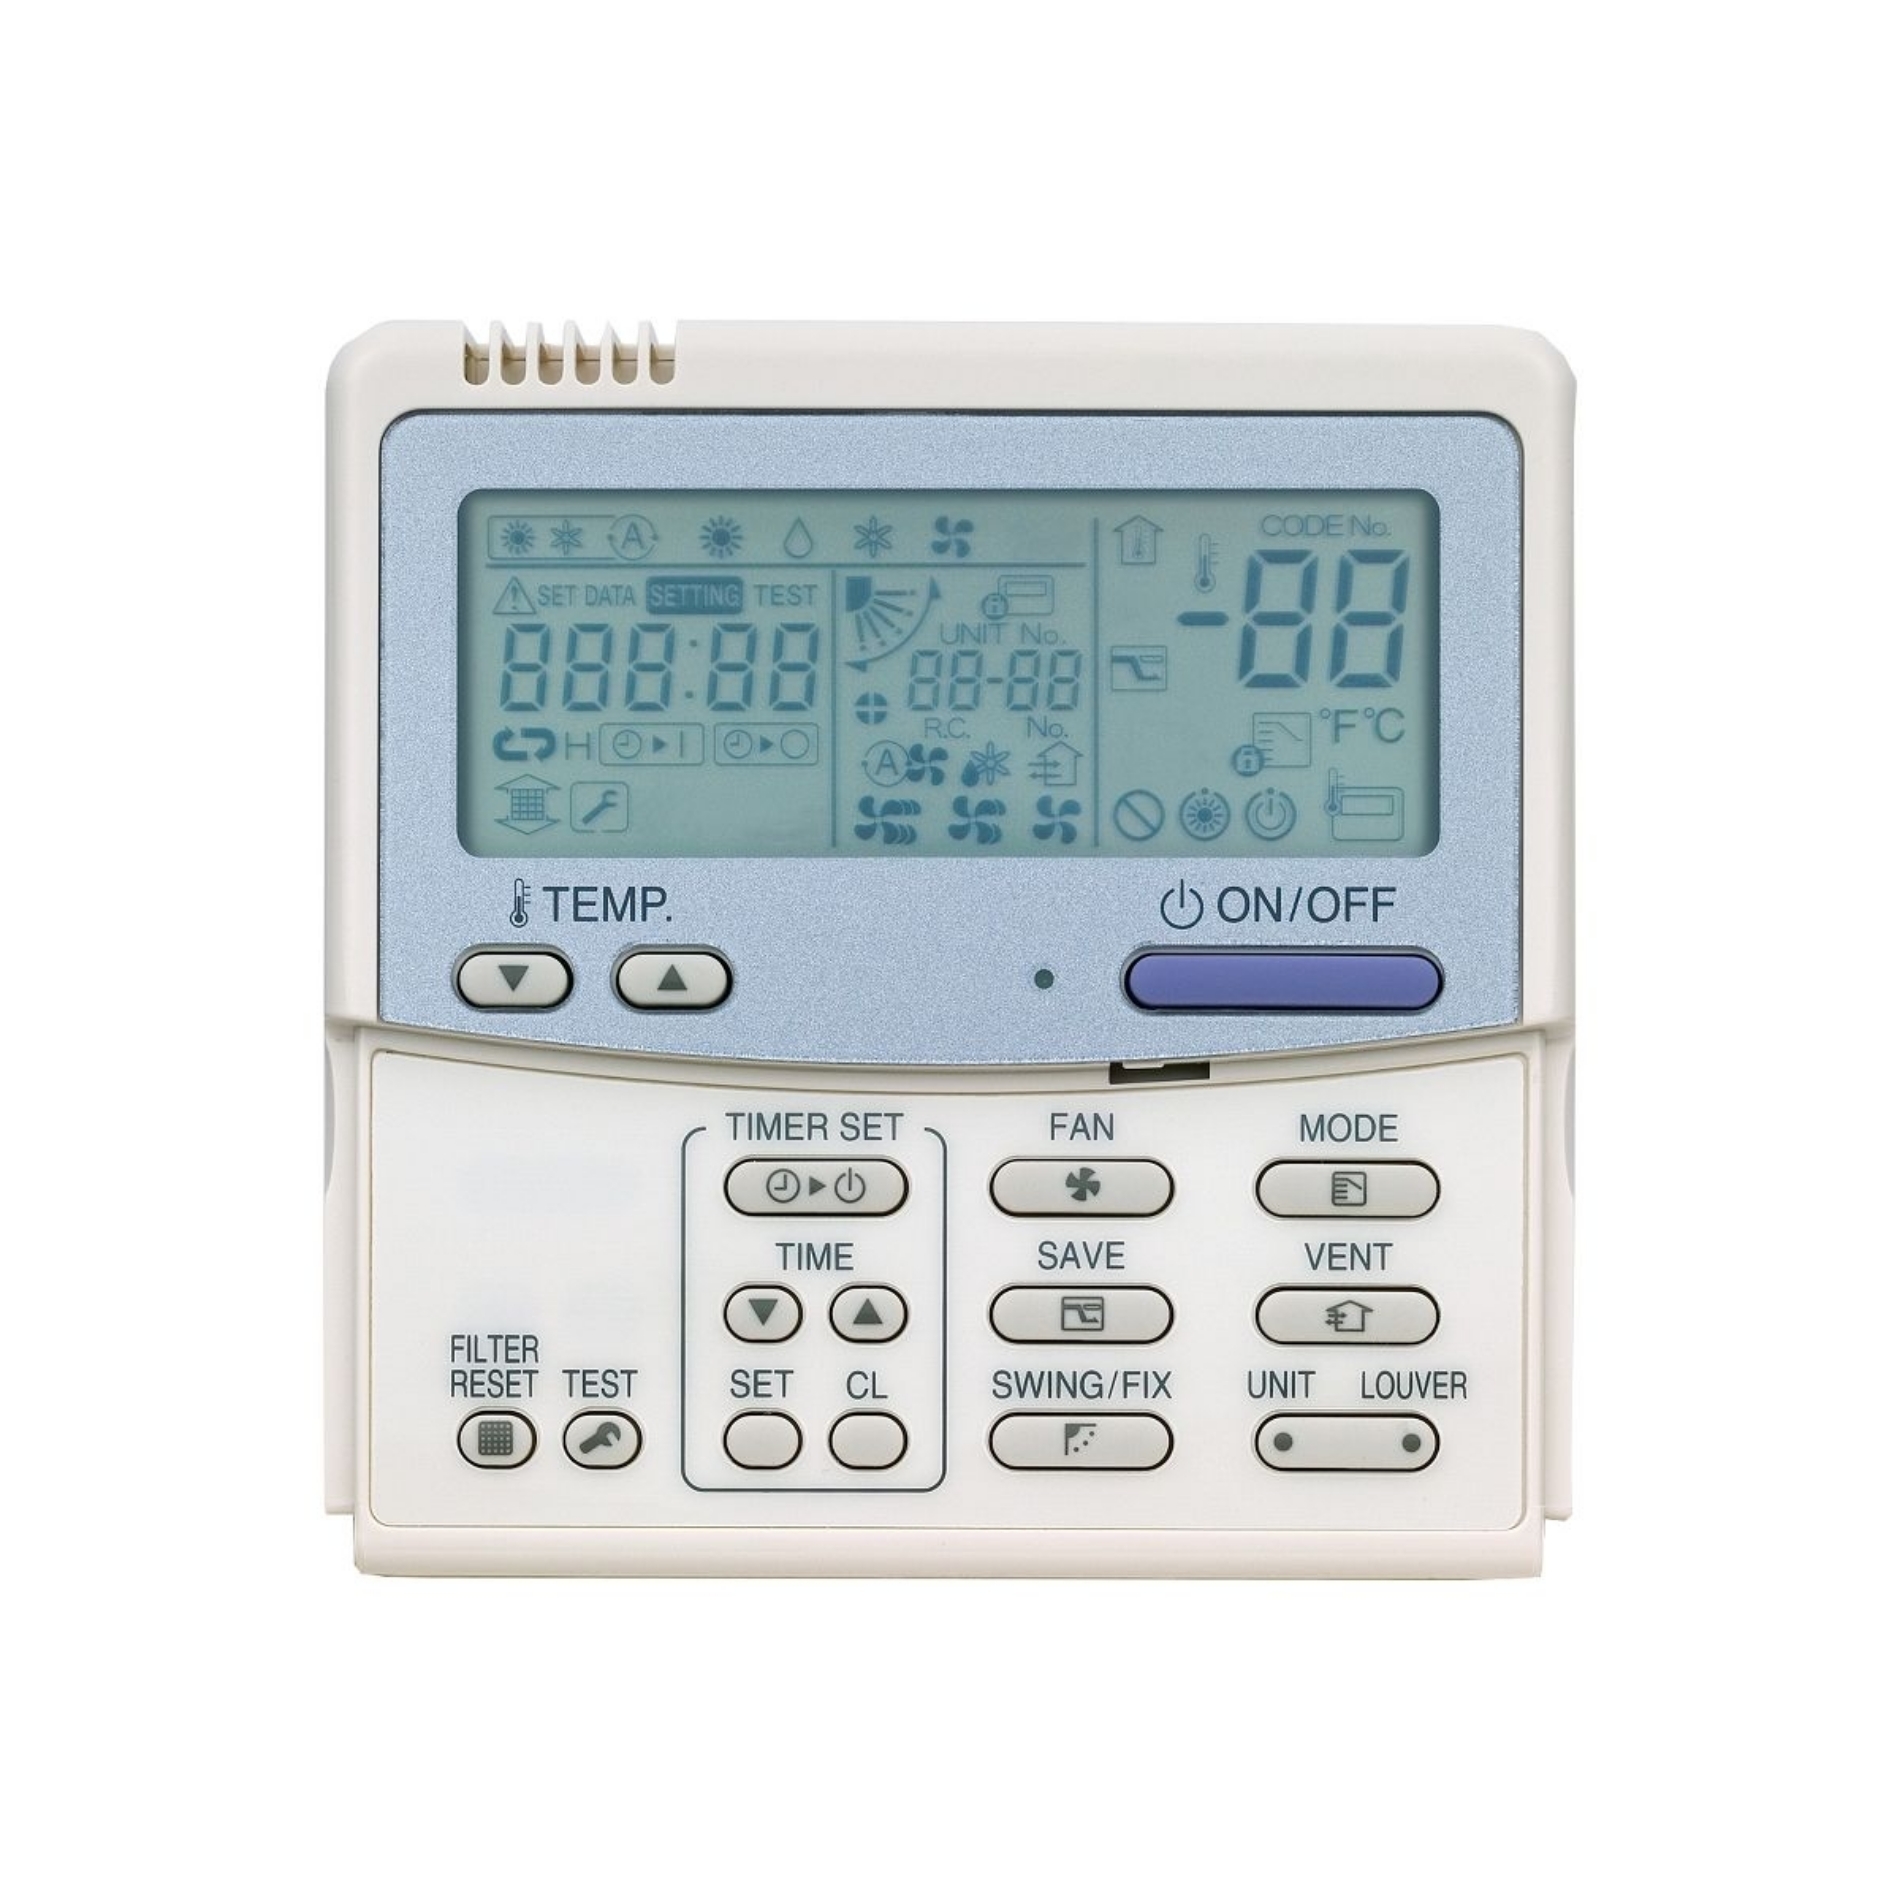 RBC-AMT32E standard remote controller